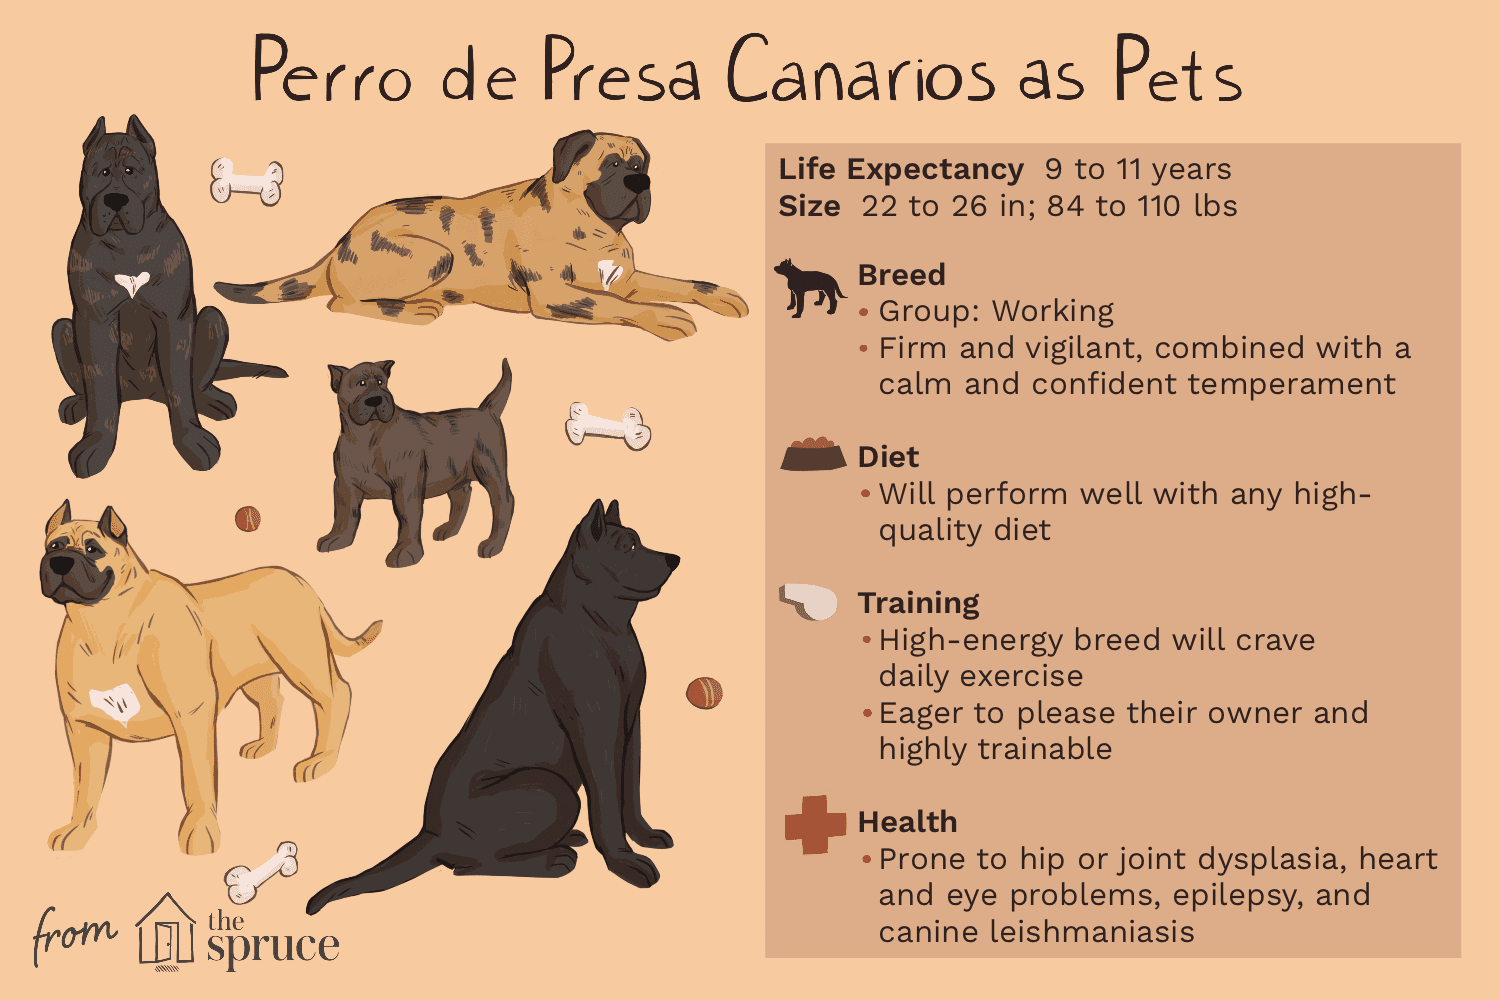 perro de presa canarios as pets illustration